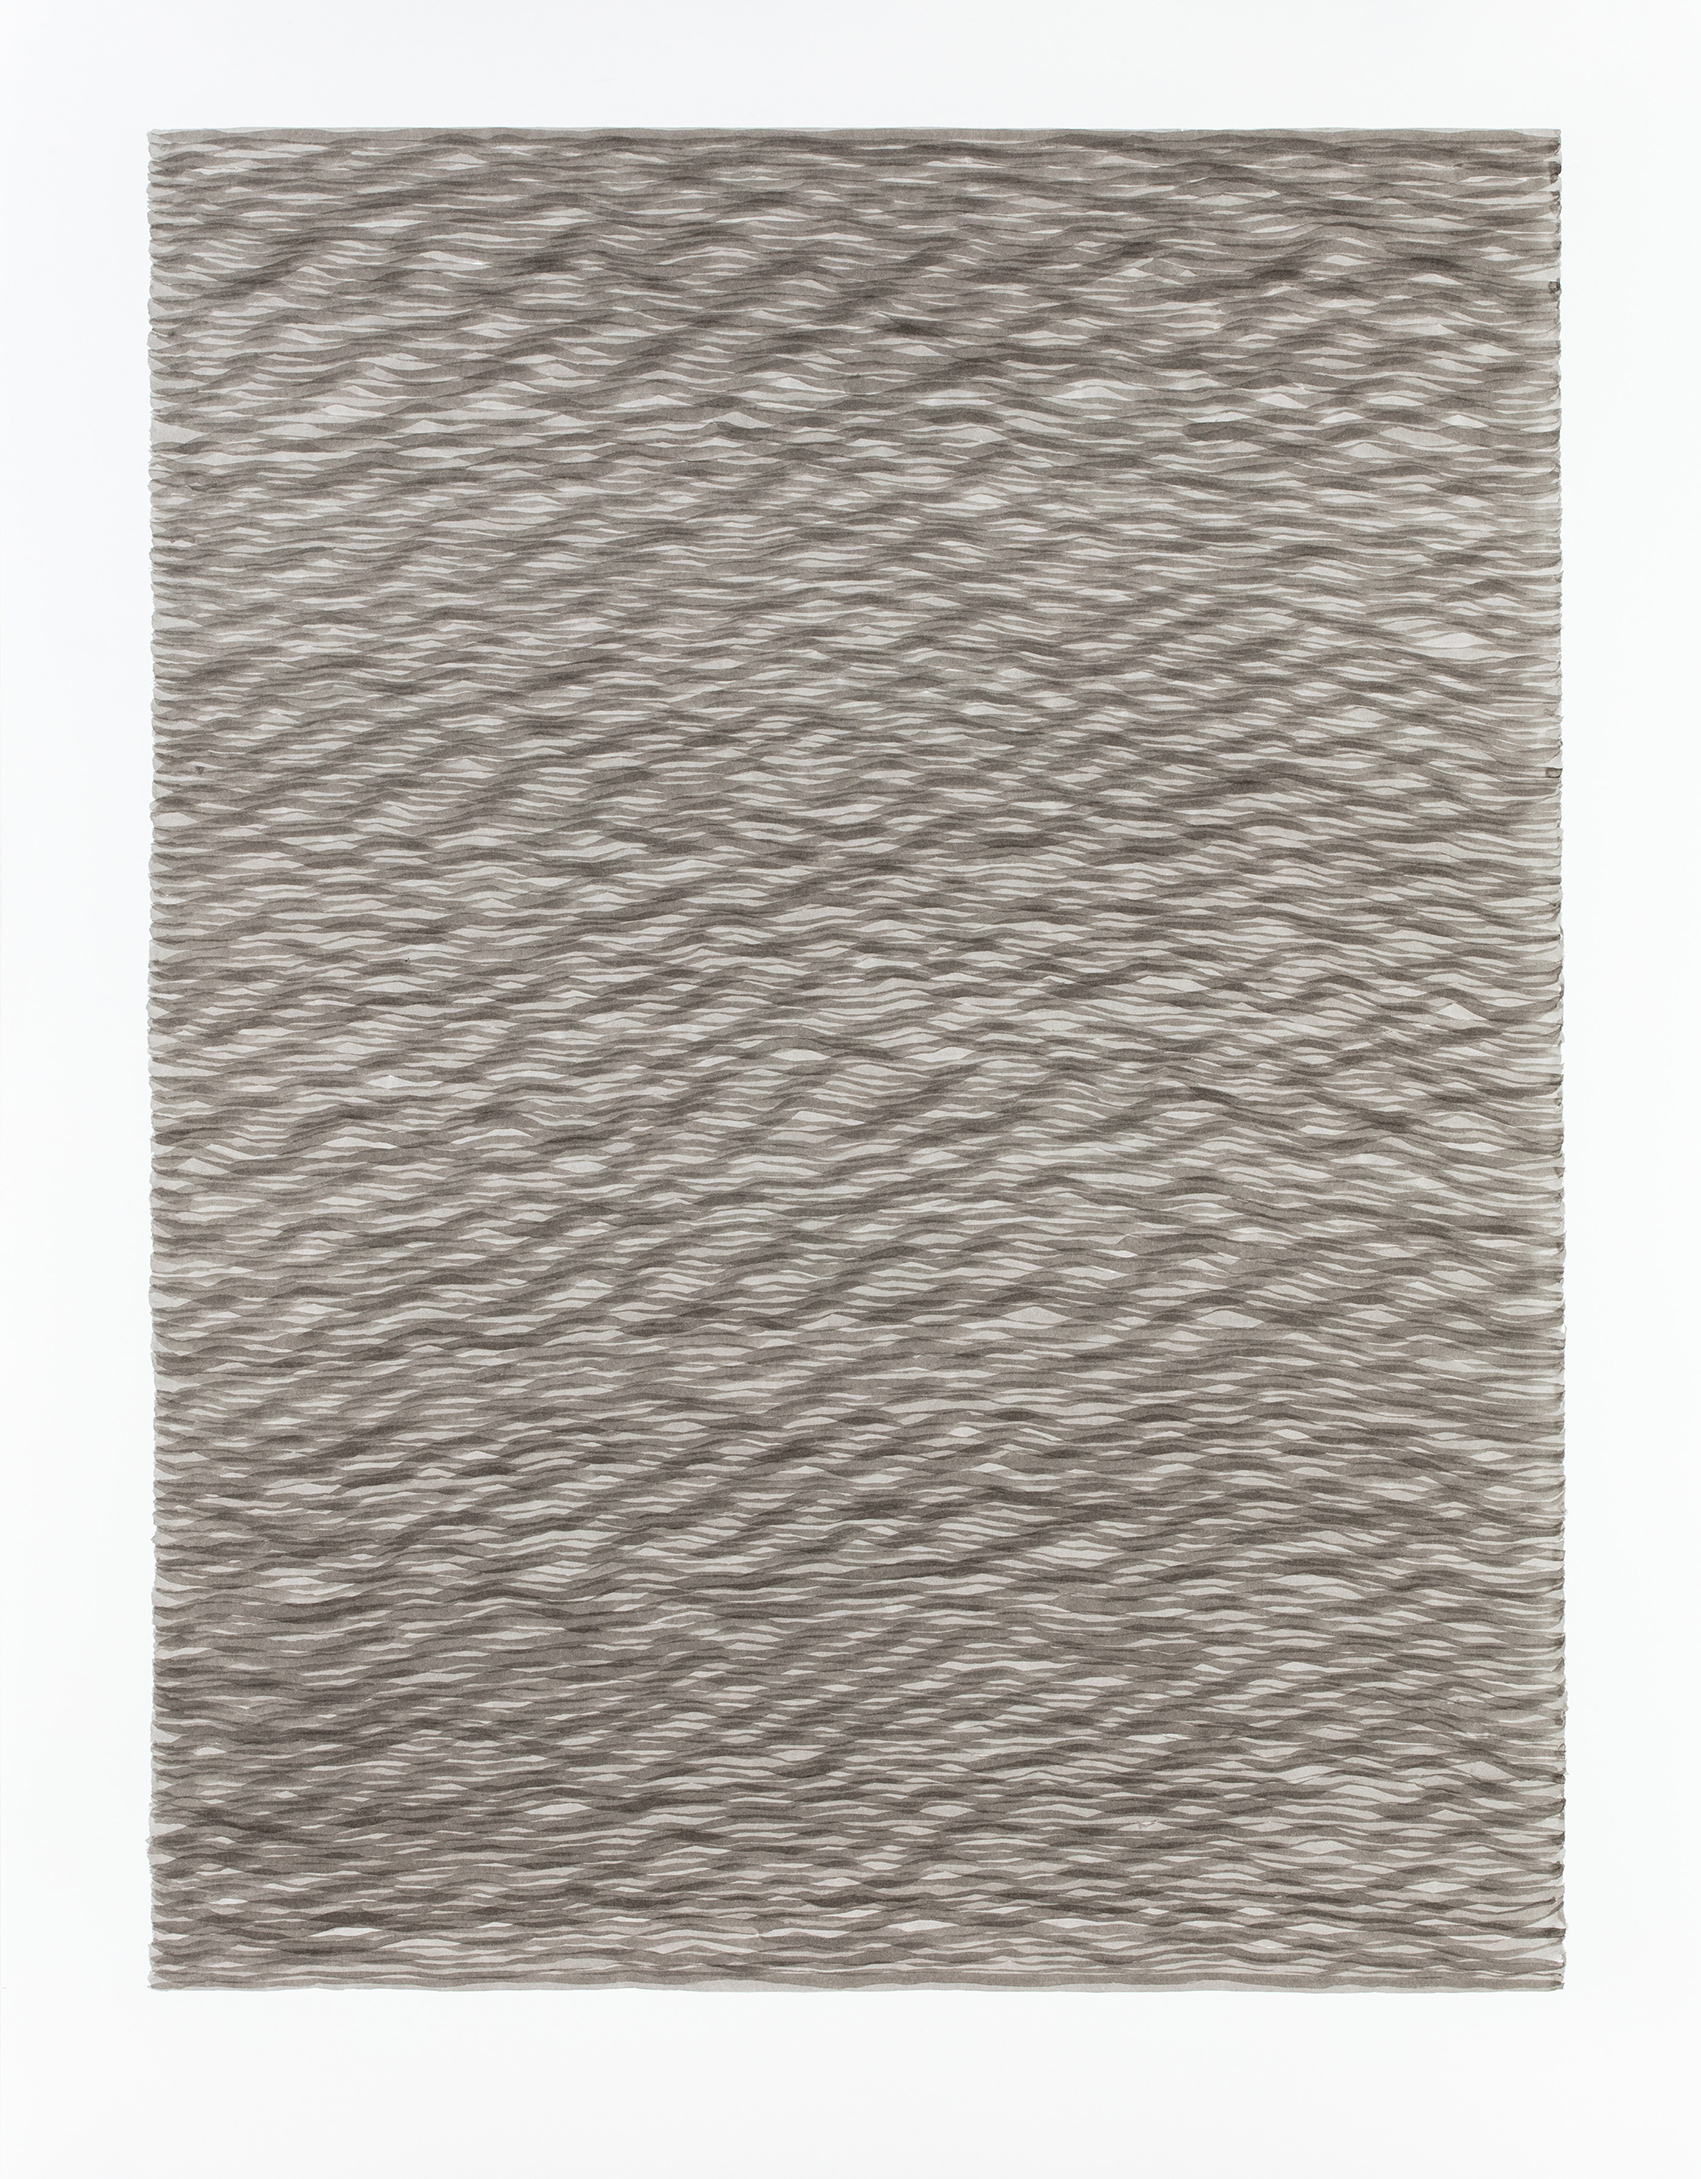 LUISE VON ROHDEN Wellen (hh h/wu 150/0), 2018, Tusche auf Papier, 78 x 58 cm, Foto: Thomas Bruns